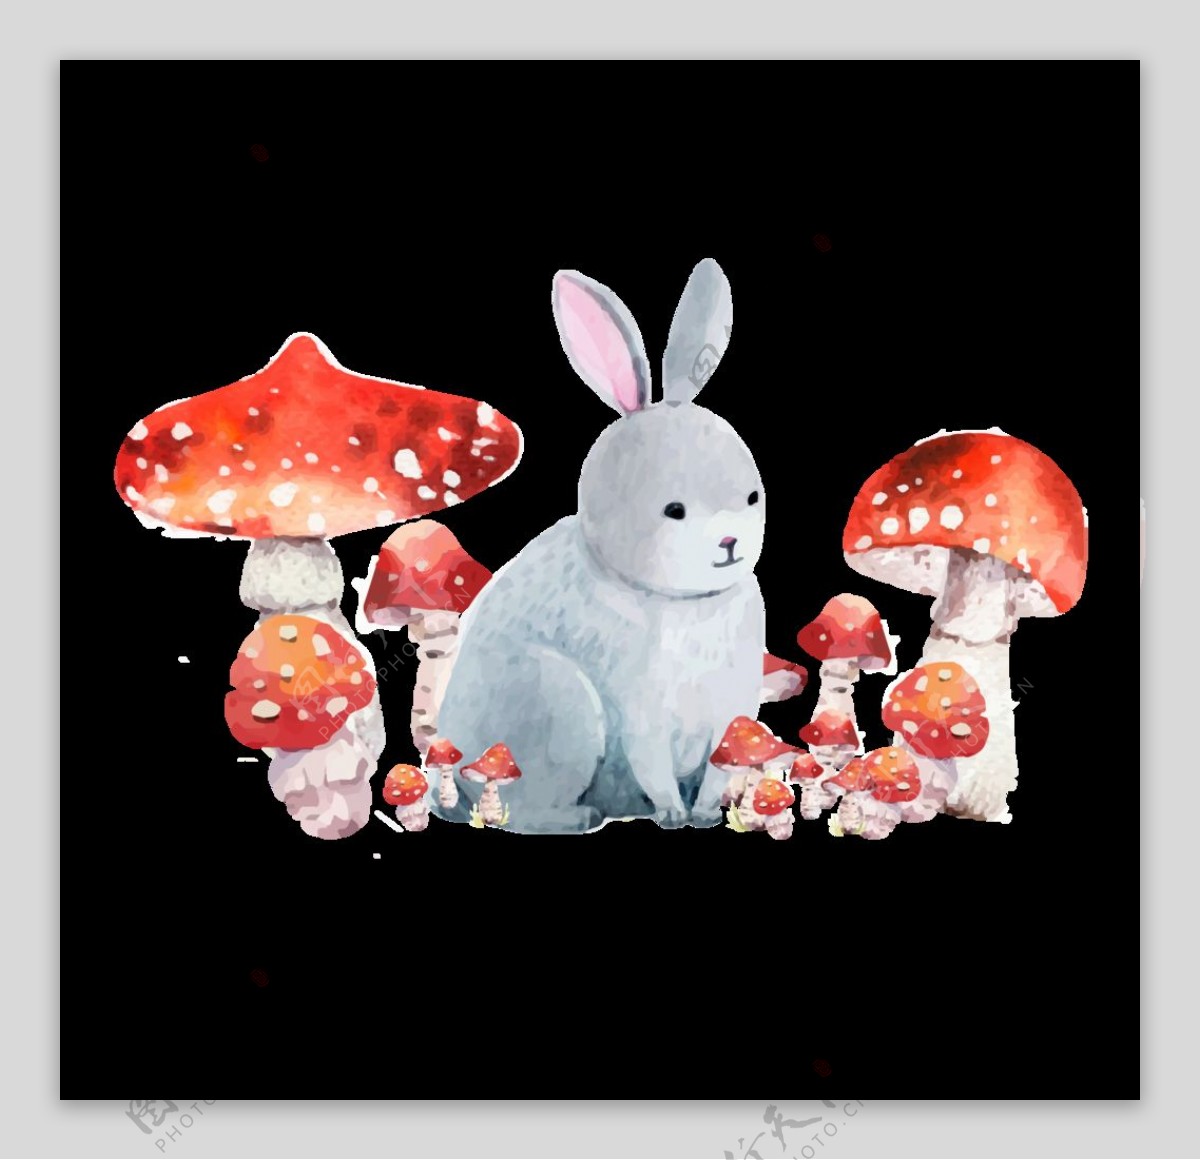 小兔子采蘑菇